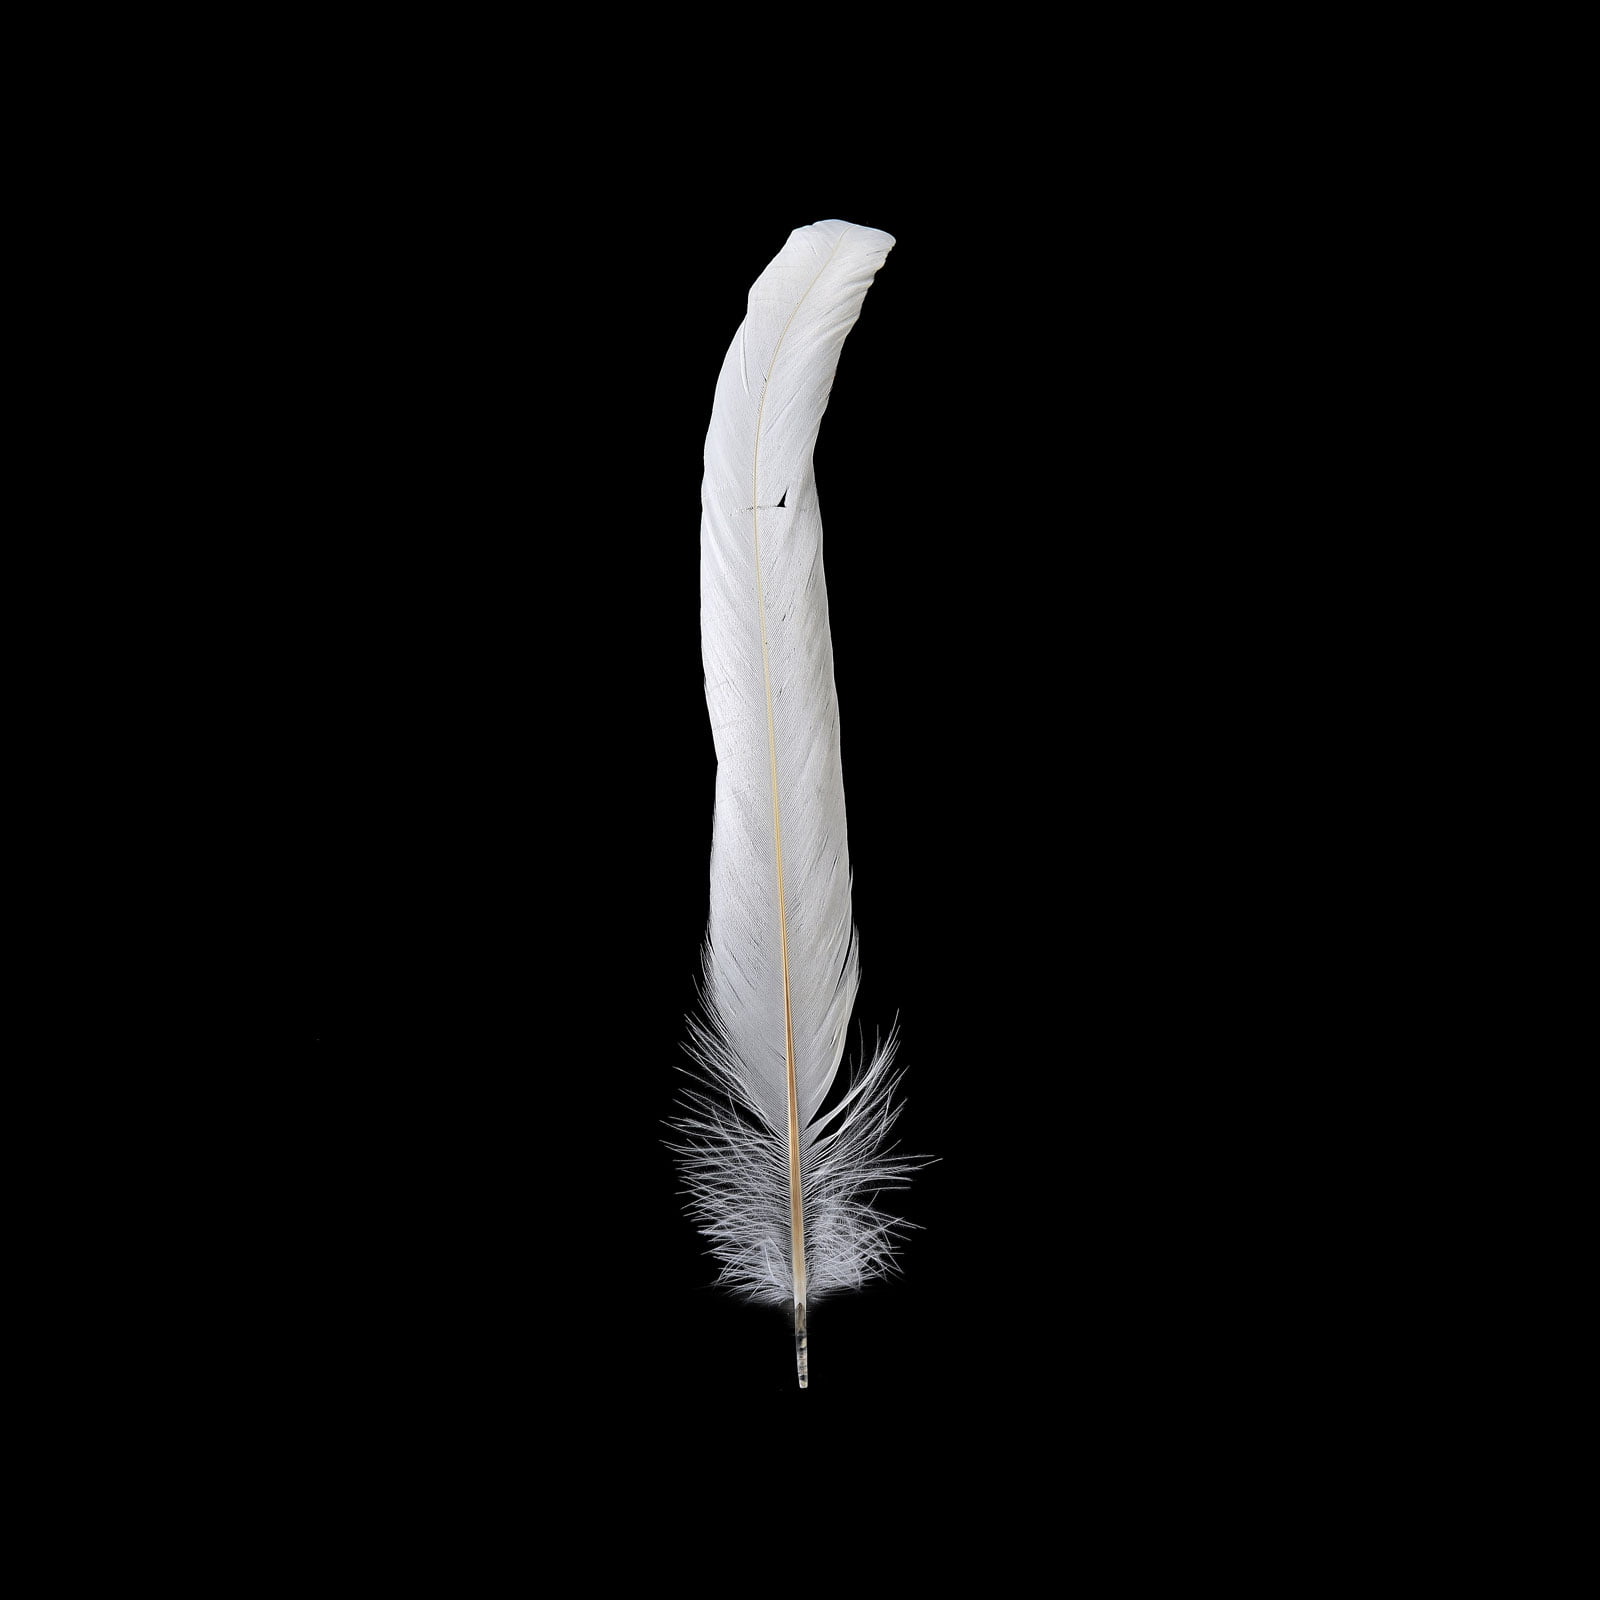 EVNNO Evnno 10 Pcs Natural Black Ostrich Feathers Making Kit,27-29